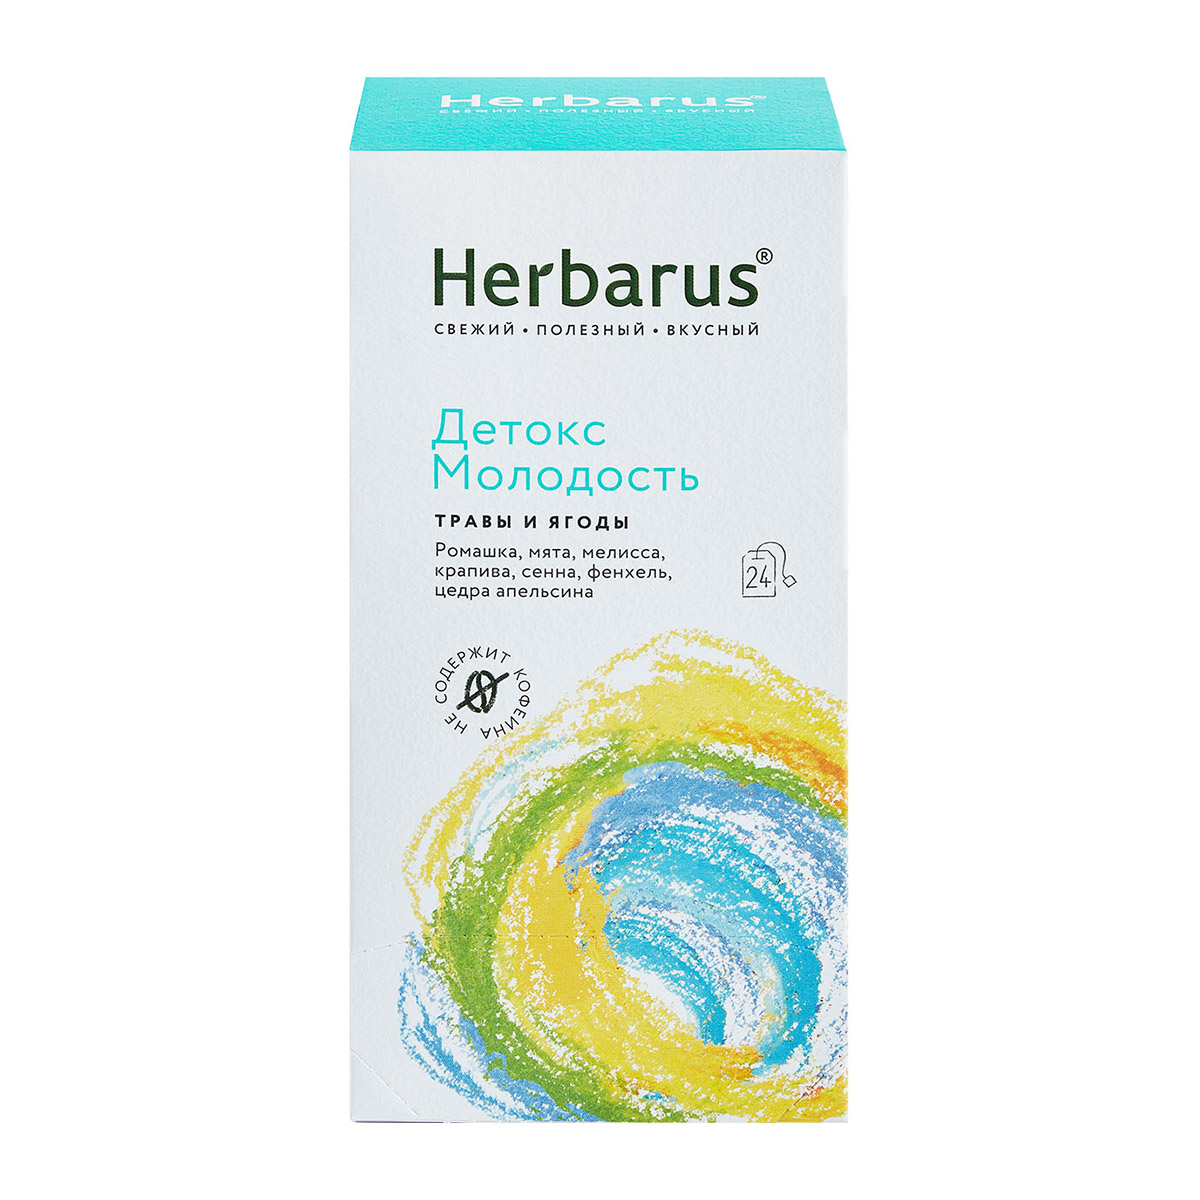 Herbarus Чайный напиток Детокс и молодость, 24 х 1,8 г (Herbarus, Травы и ягоды) чайный напиток herbarus имбирная энергия 24 пакетика